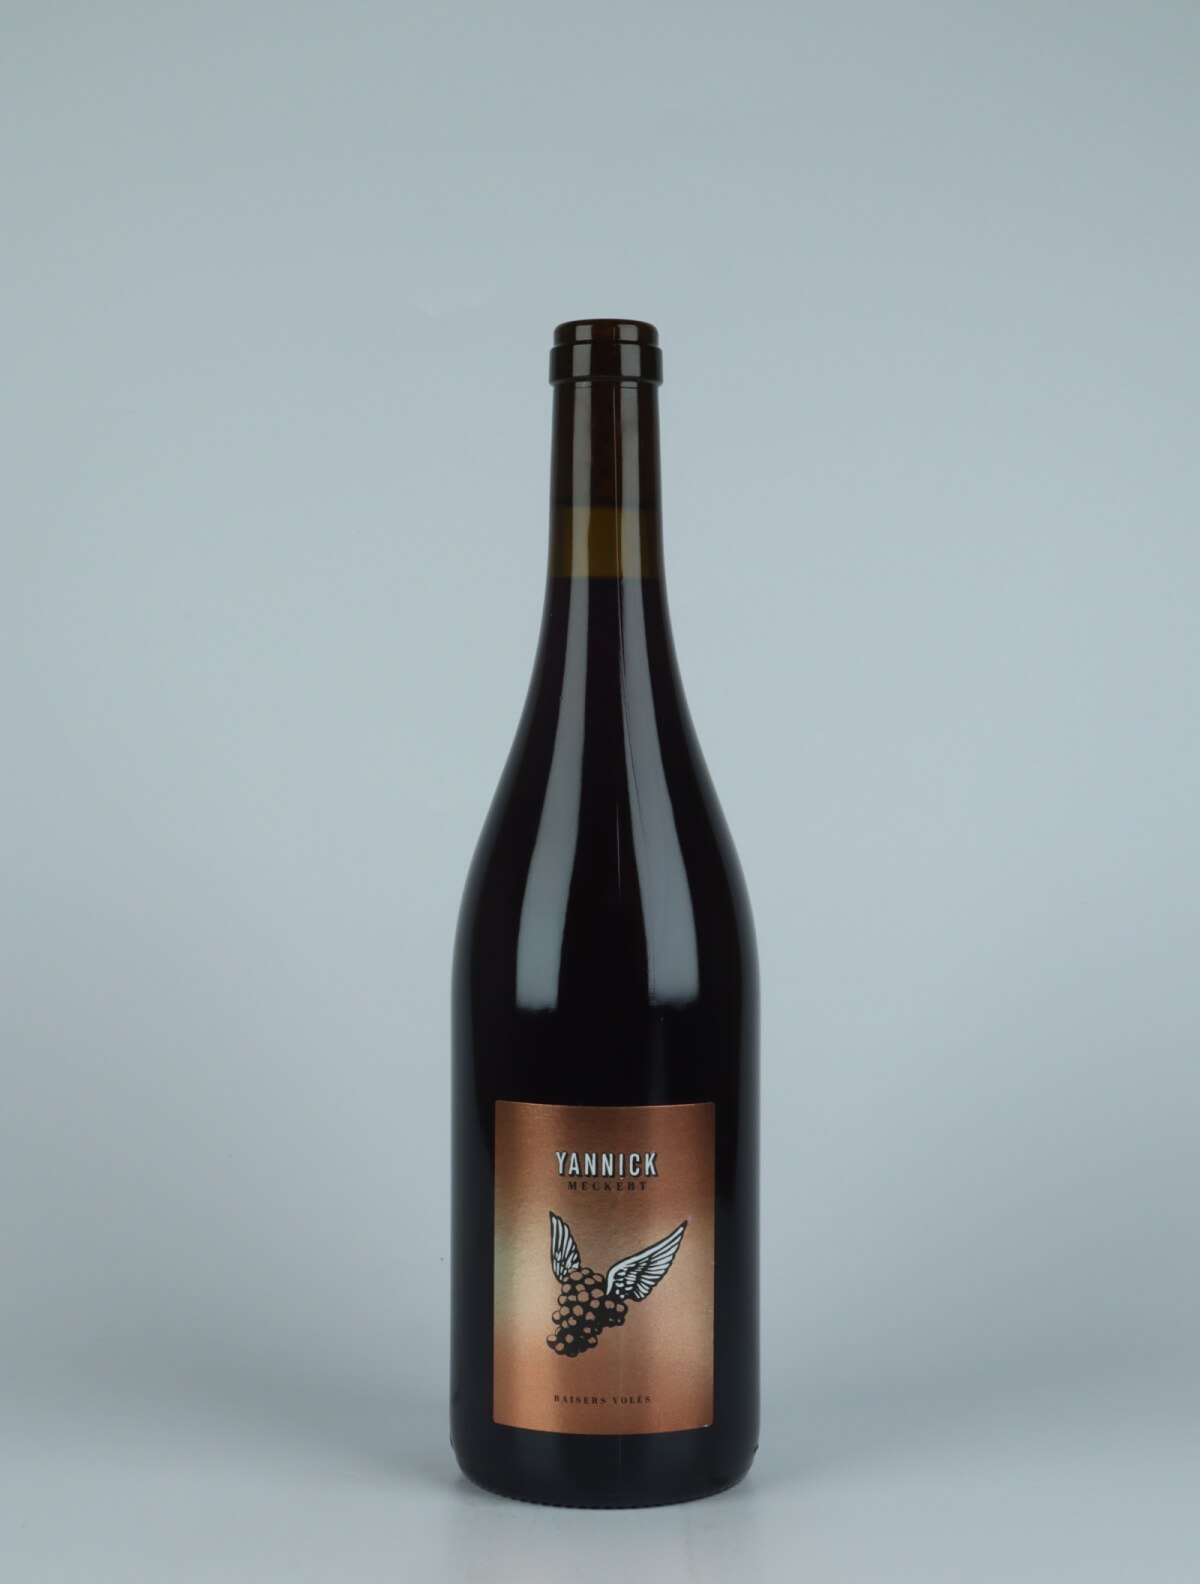 En flaske 2021 Pinot Noir - Baisers Volés Rødvin fra Yannick Meckert, Alsace i Frankrig